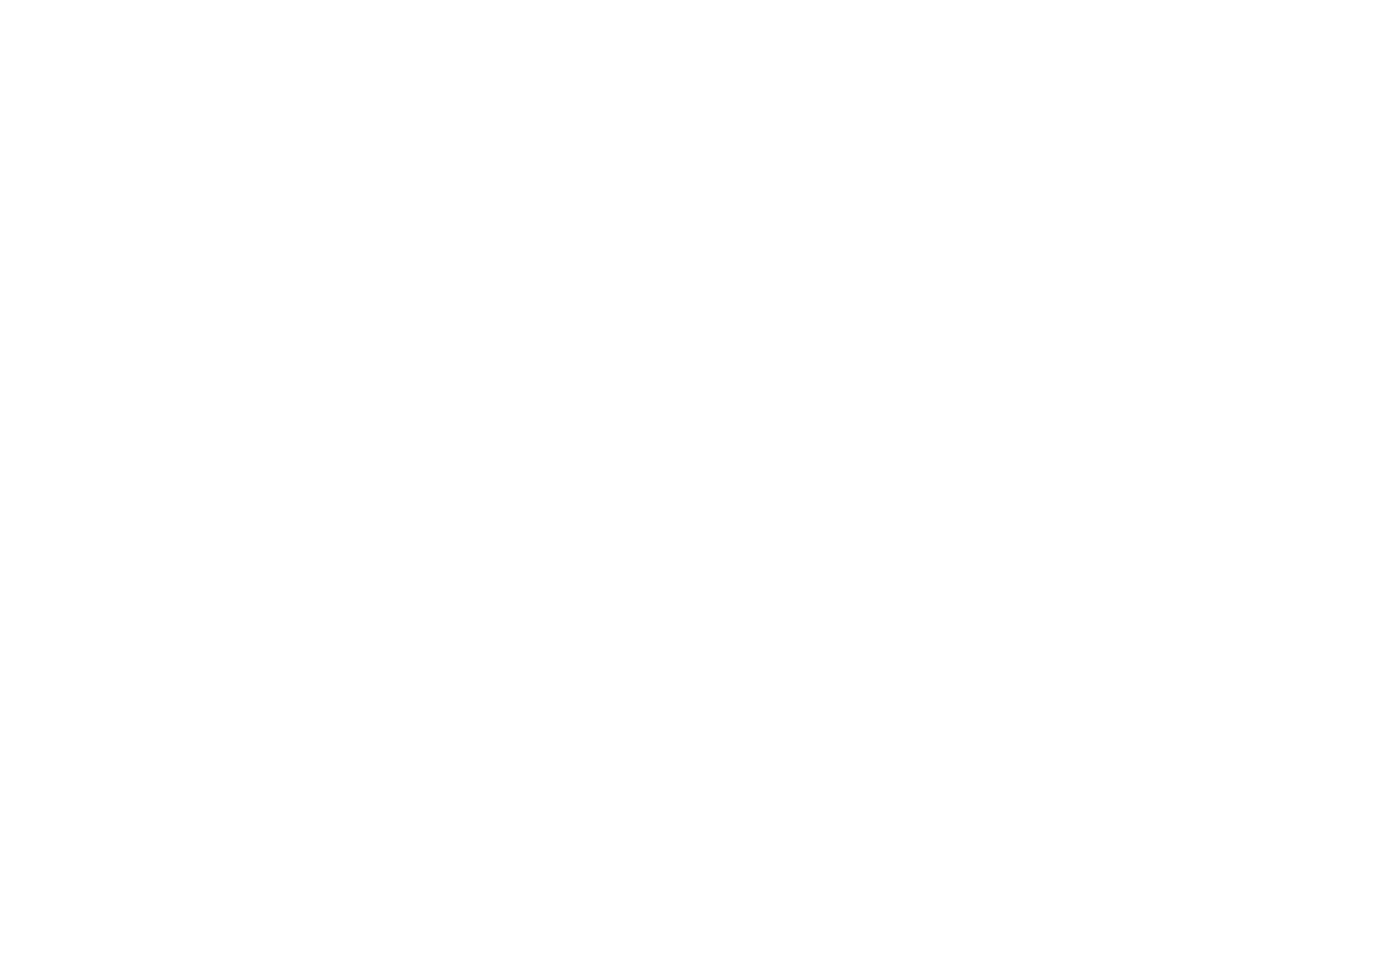 The Dick Cavett Show logo